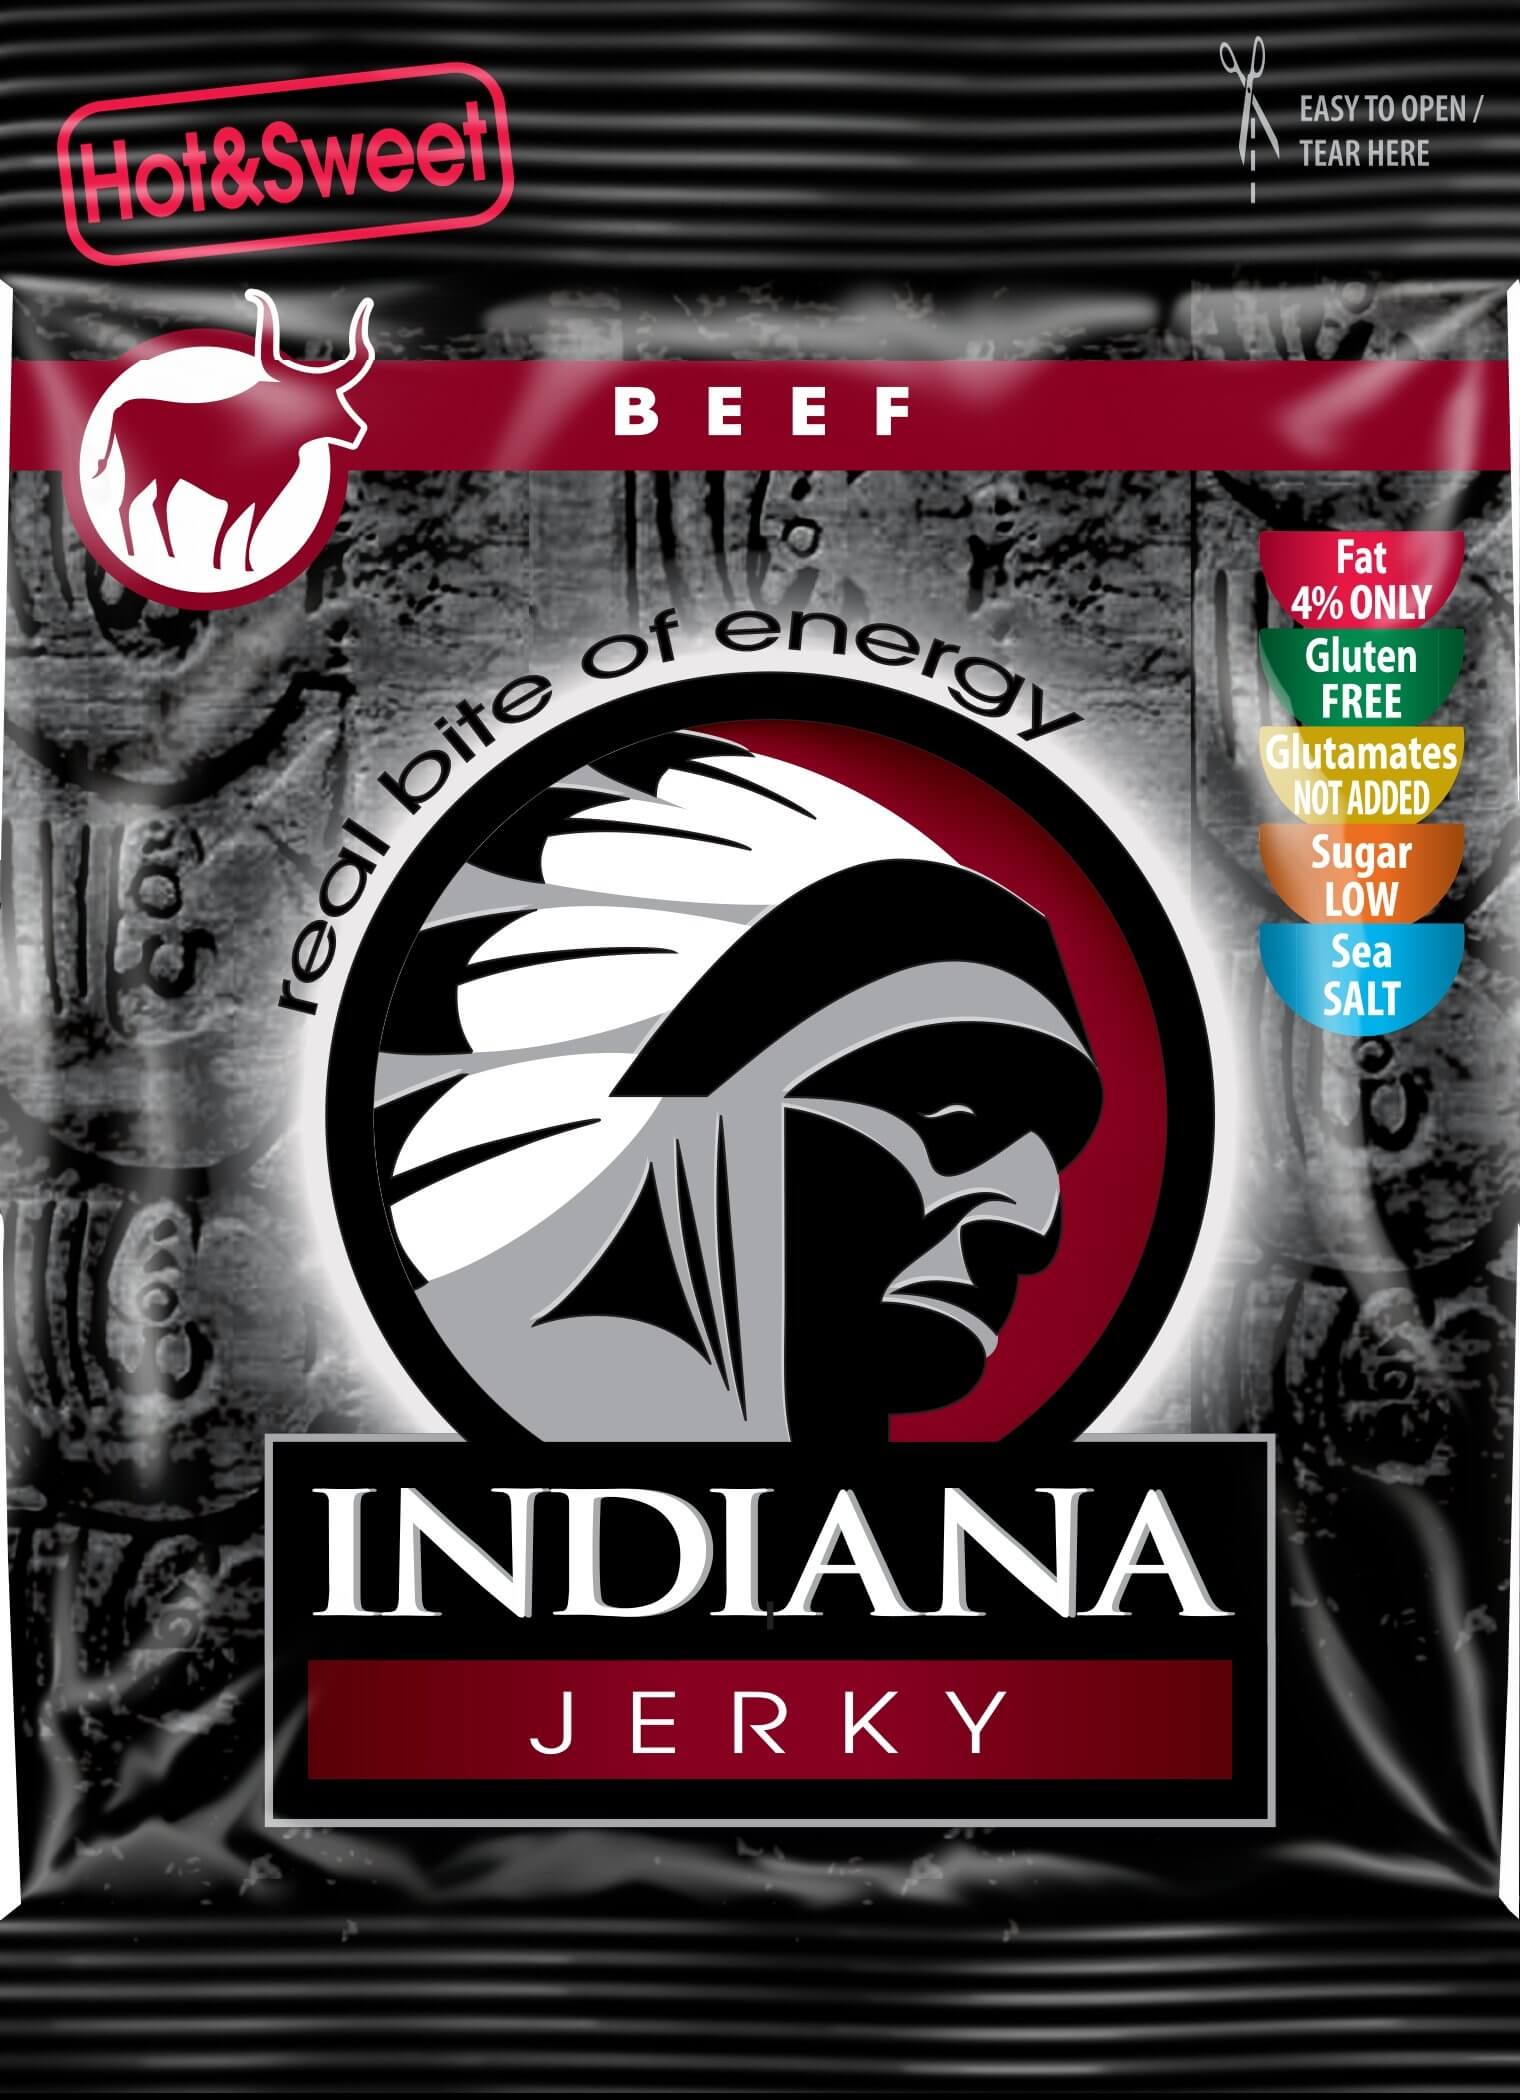 Indiana Indiana Jerky beef (hovězí) Hot & Sweet 25 g